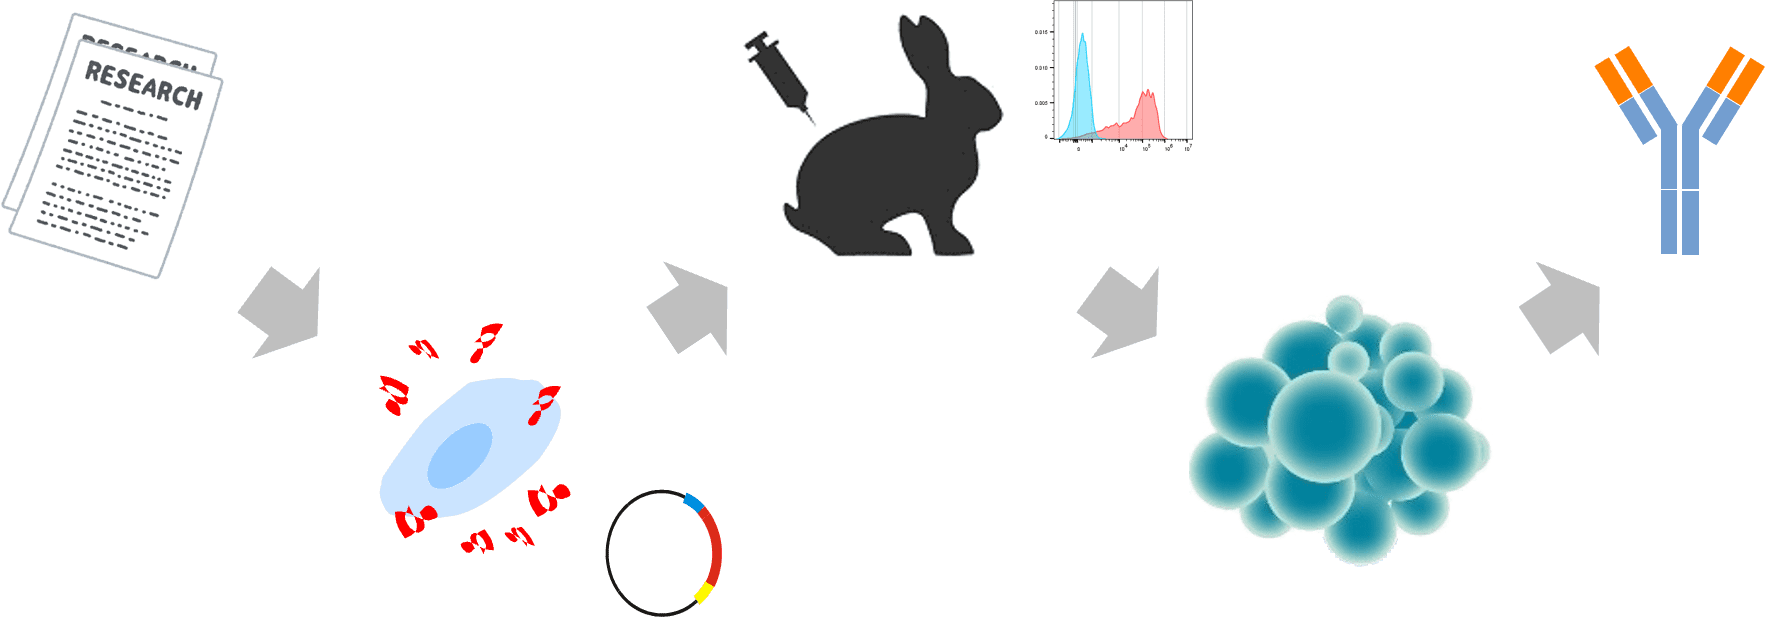 ウサギモノクローナル抗体作製イメージ図